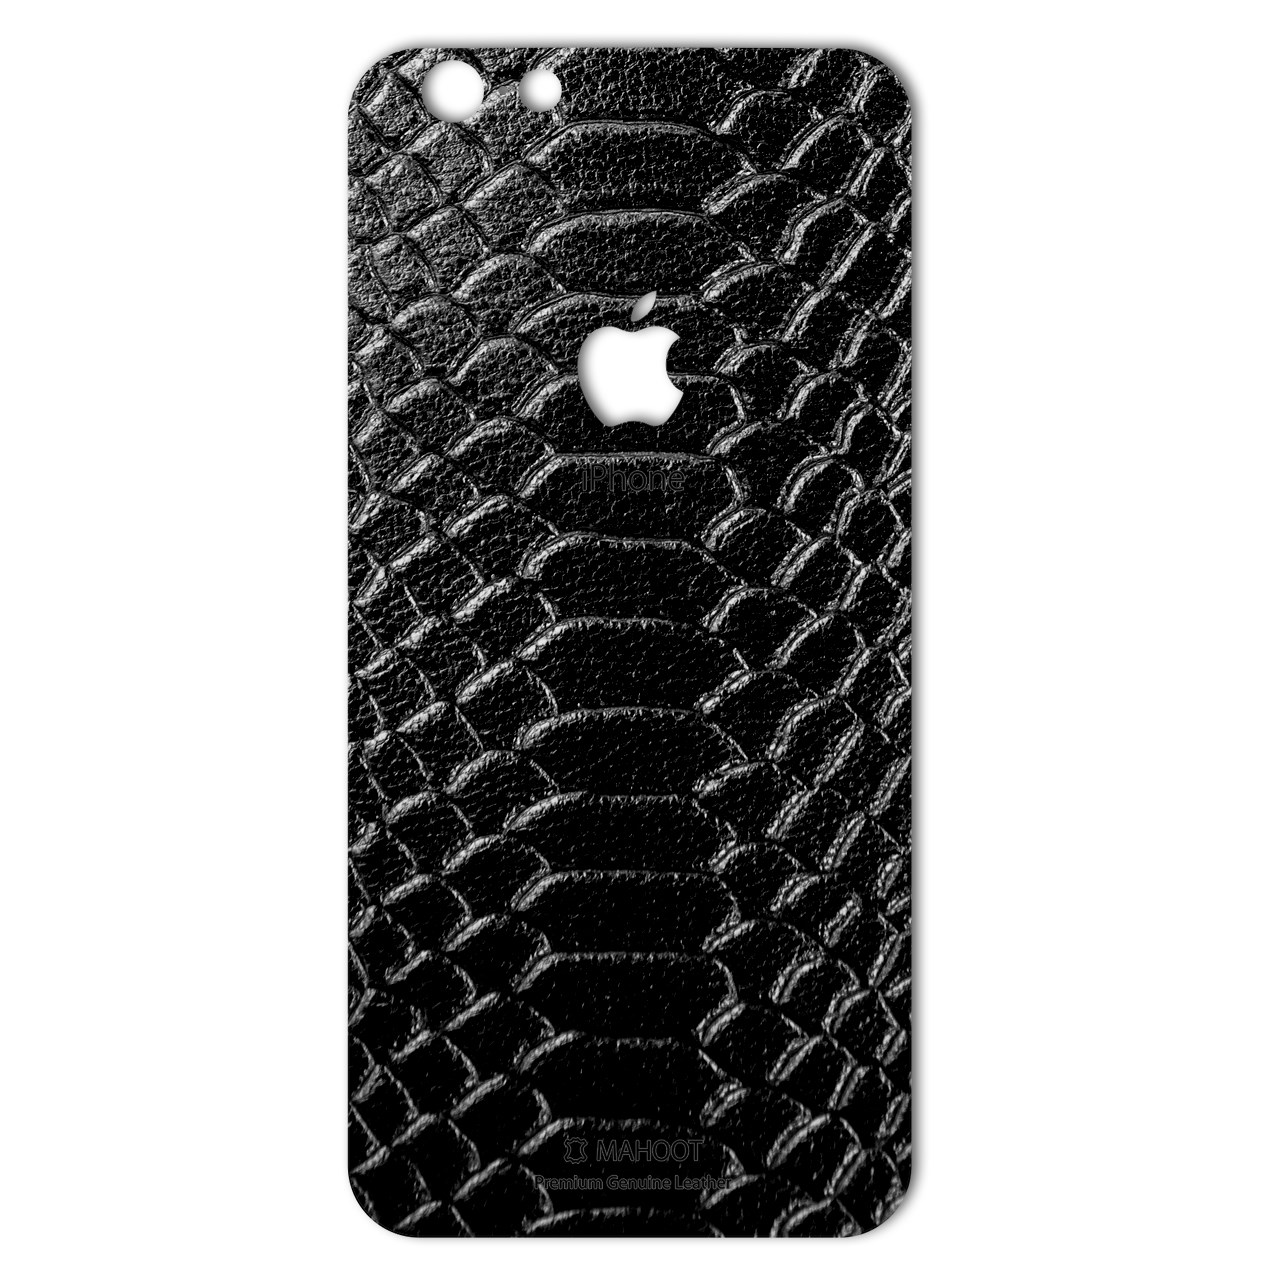 برچسب تزئینی ماهوت مدل Snake Leather مناسب برای گوشی iPhone 6/6s